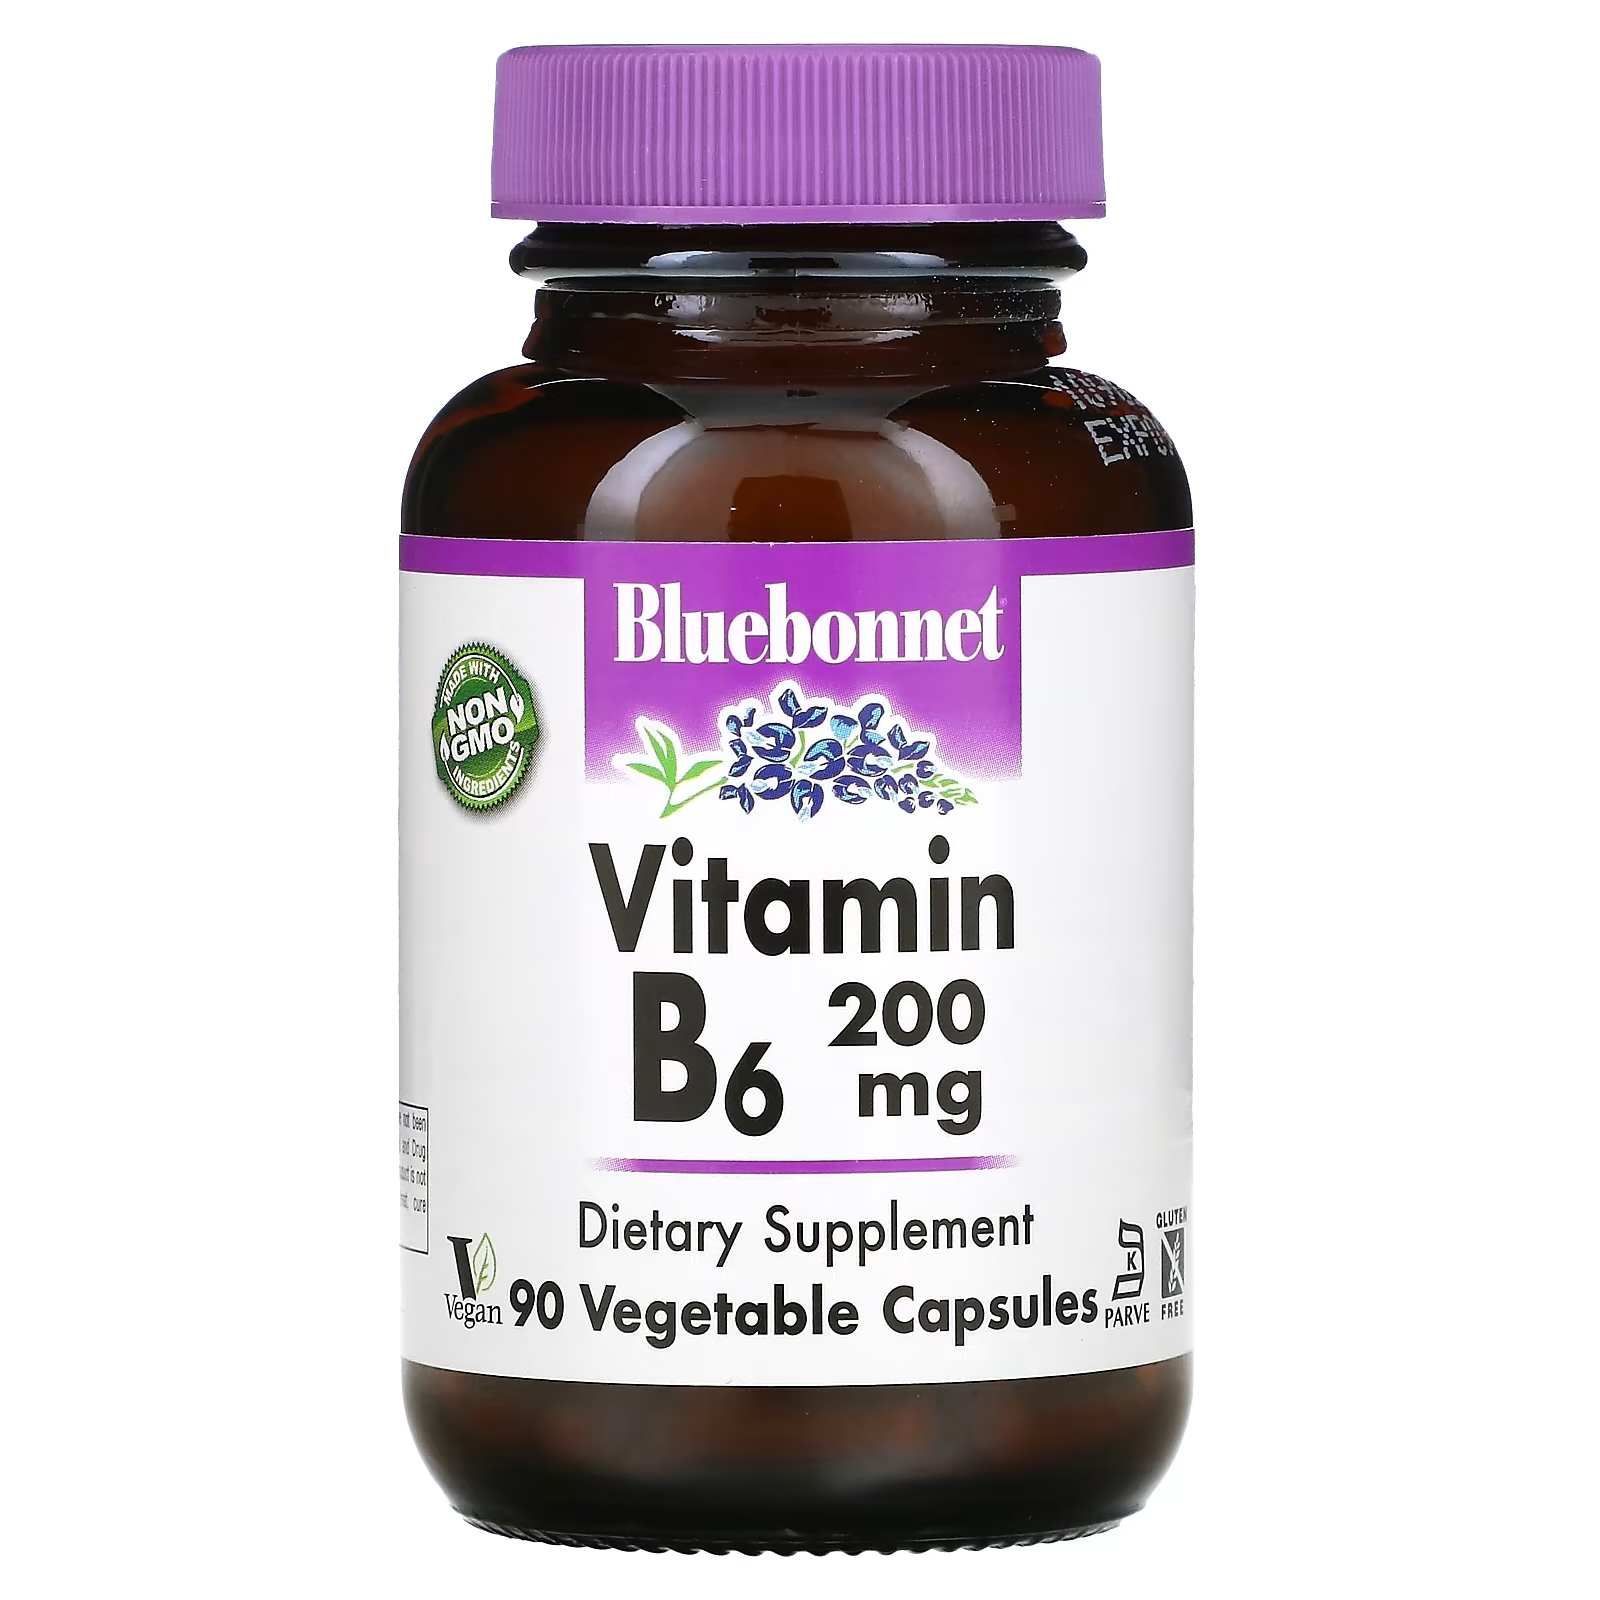 Bluebonnet Nutrition витамин В6 200 мг, 90 растительных капсул витамины b 6 200 мг bluebonnet nutrition 90 капсул